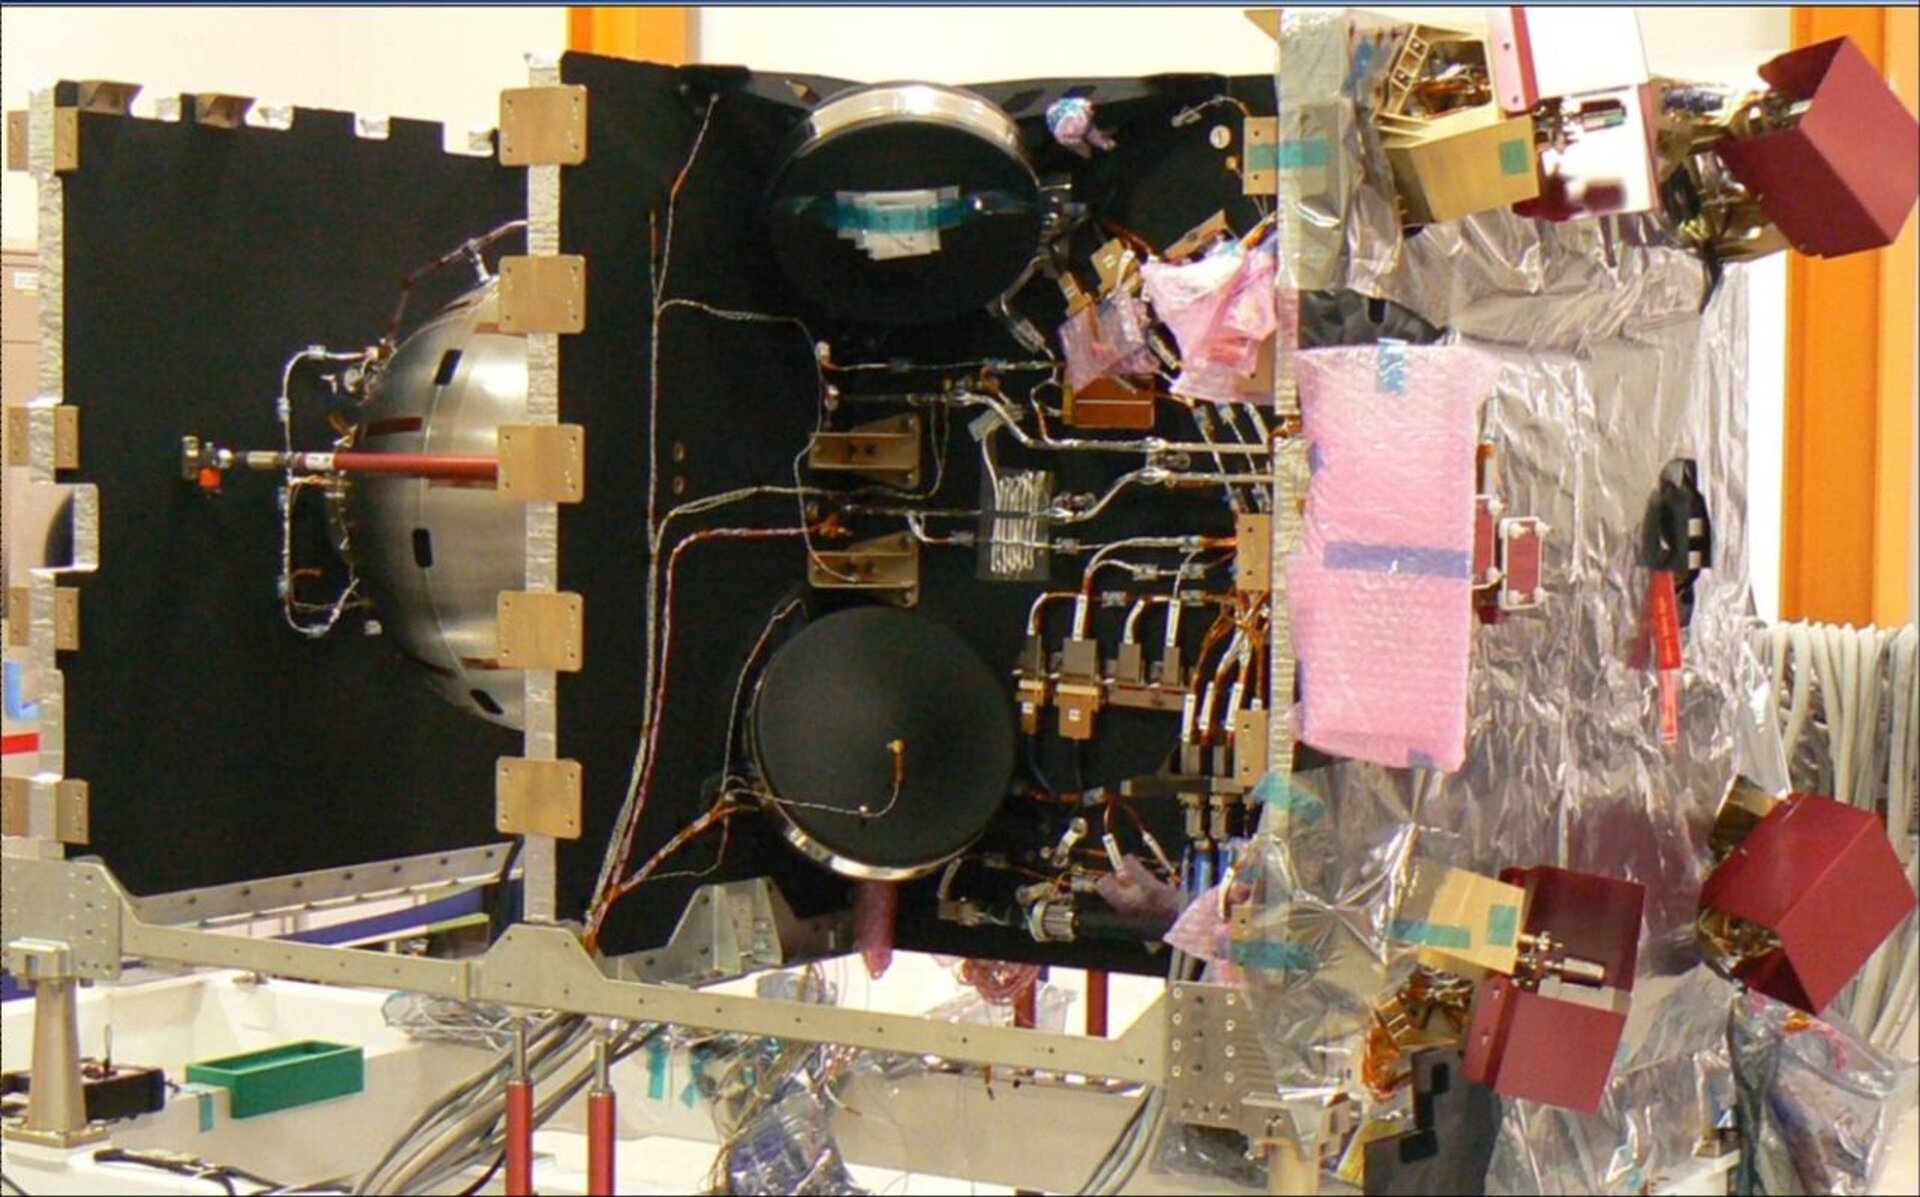 Galileo IOV protoflight platform